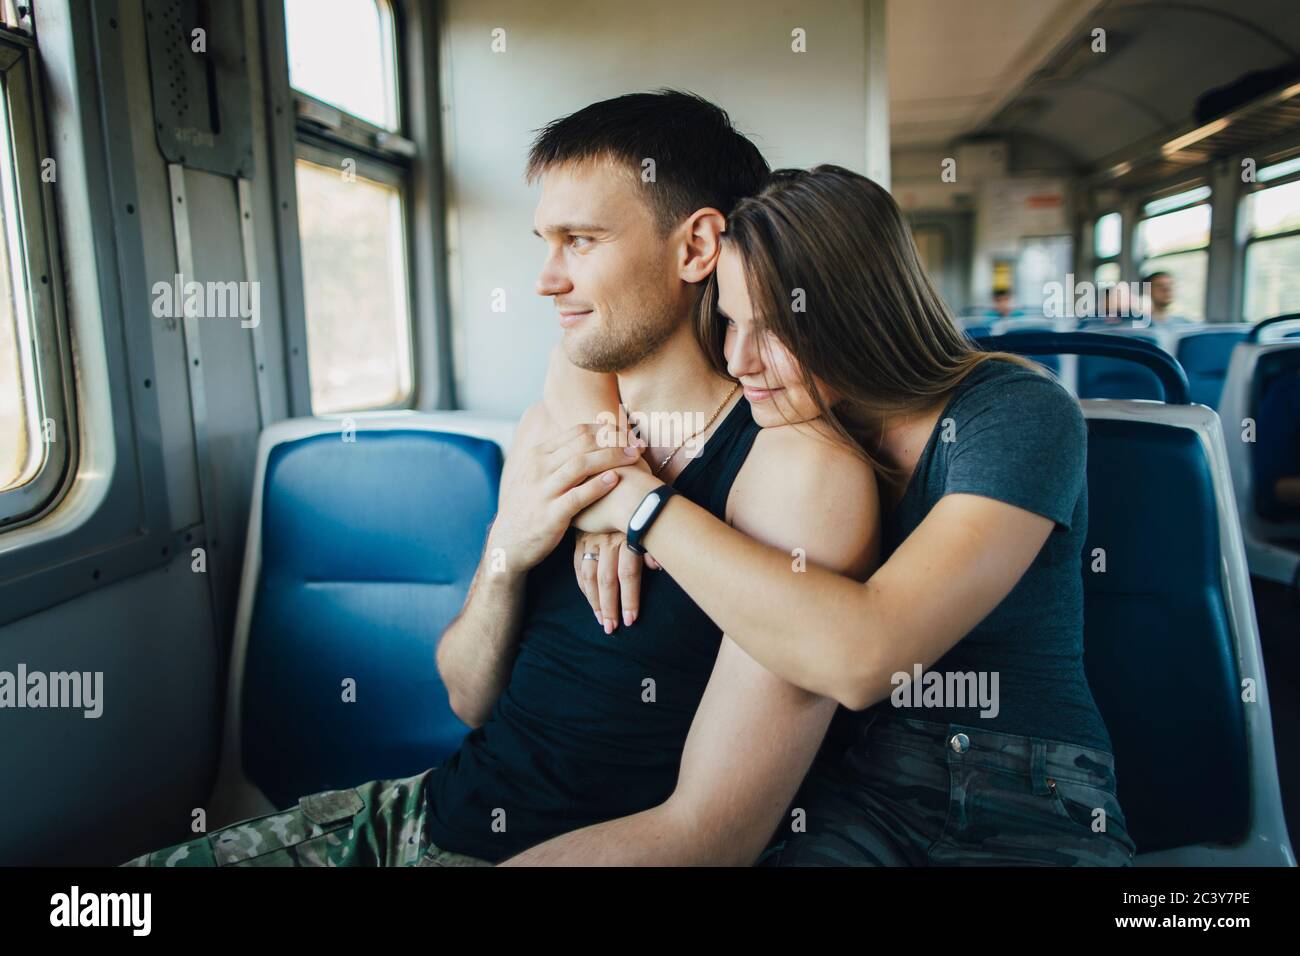 Un jeune couple s'embrasse en train Banque D'Images